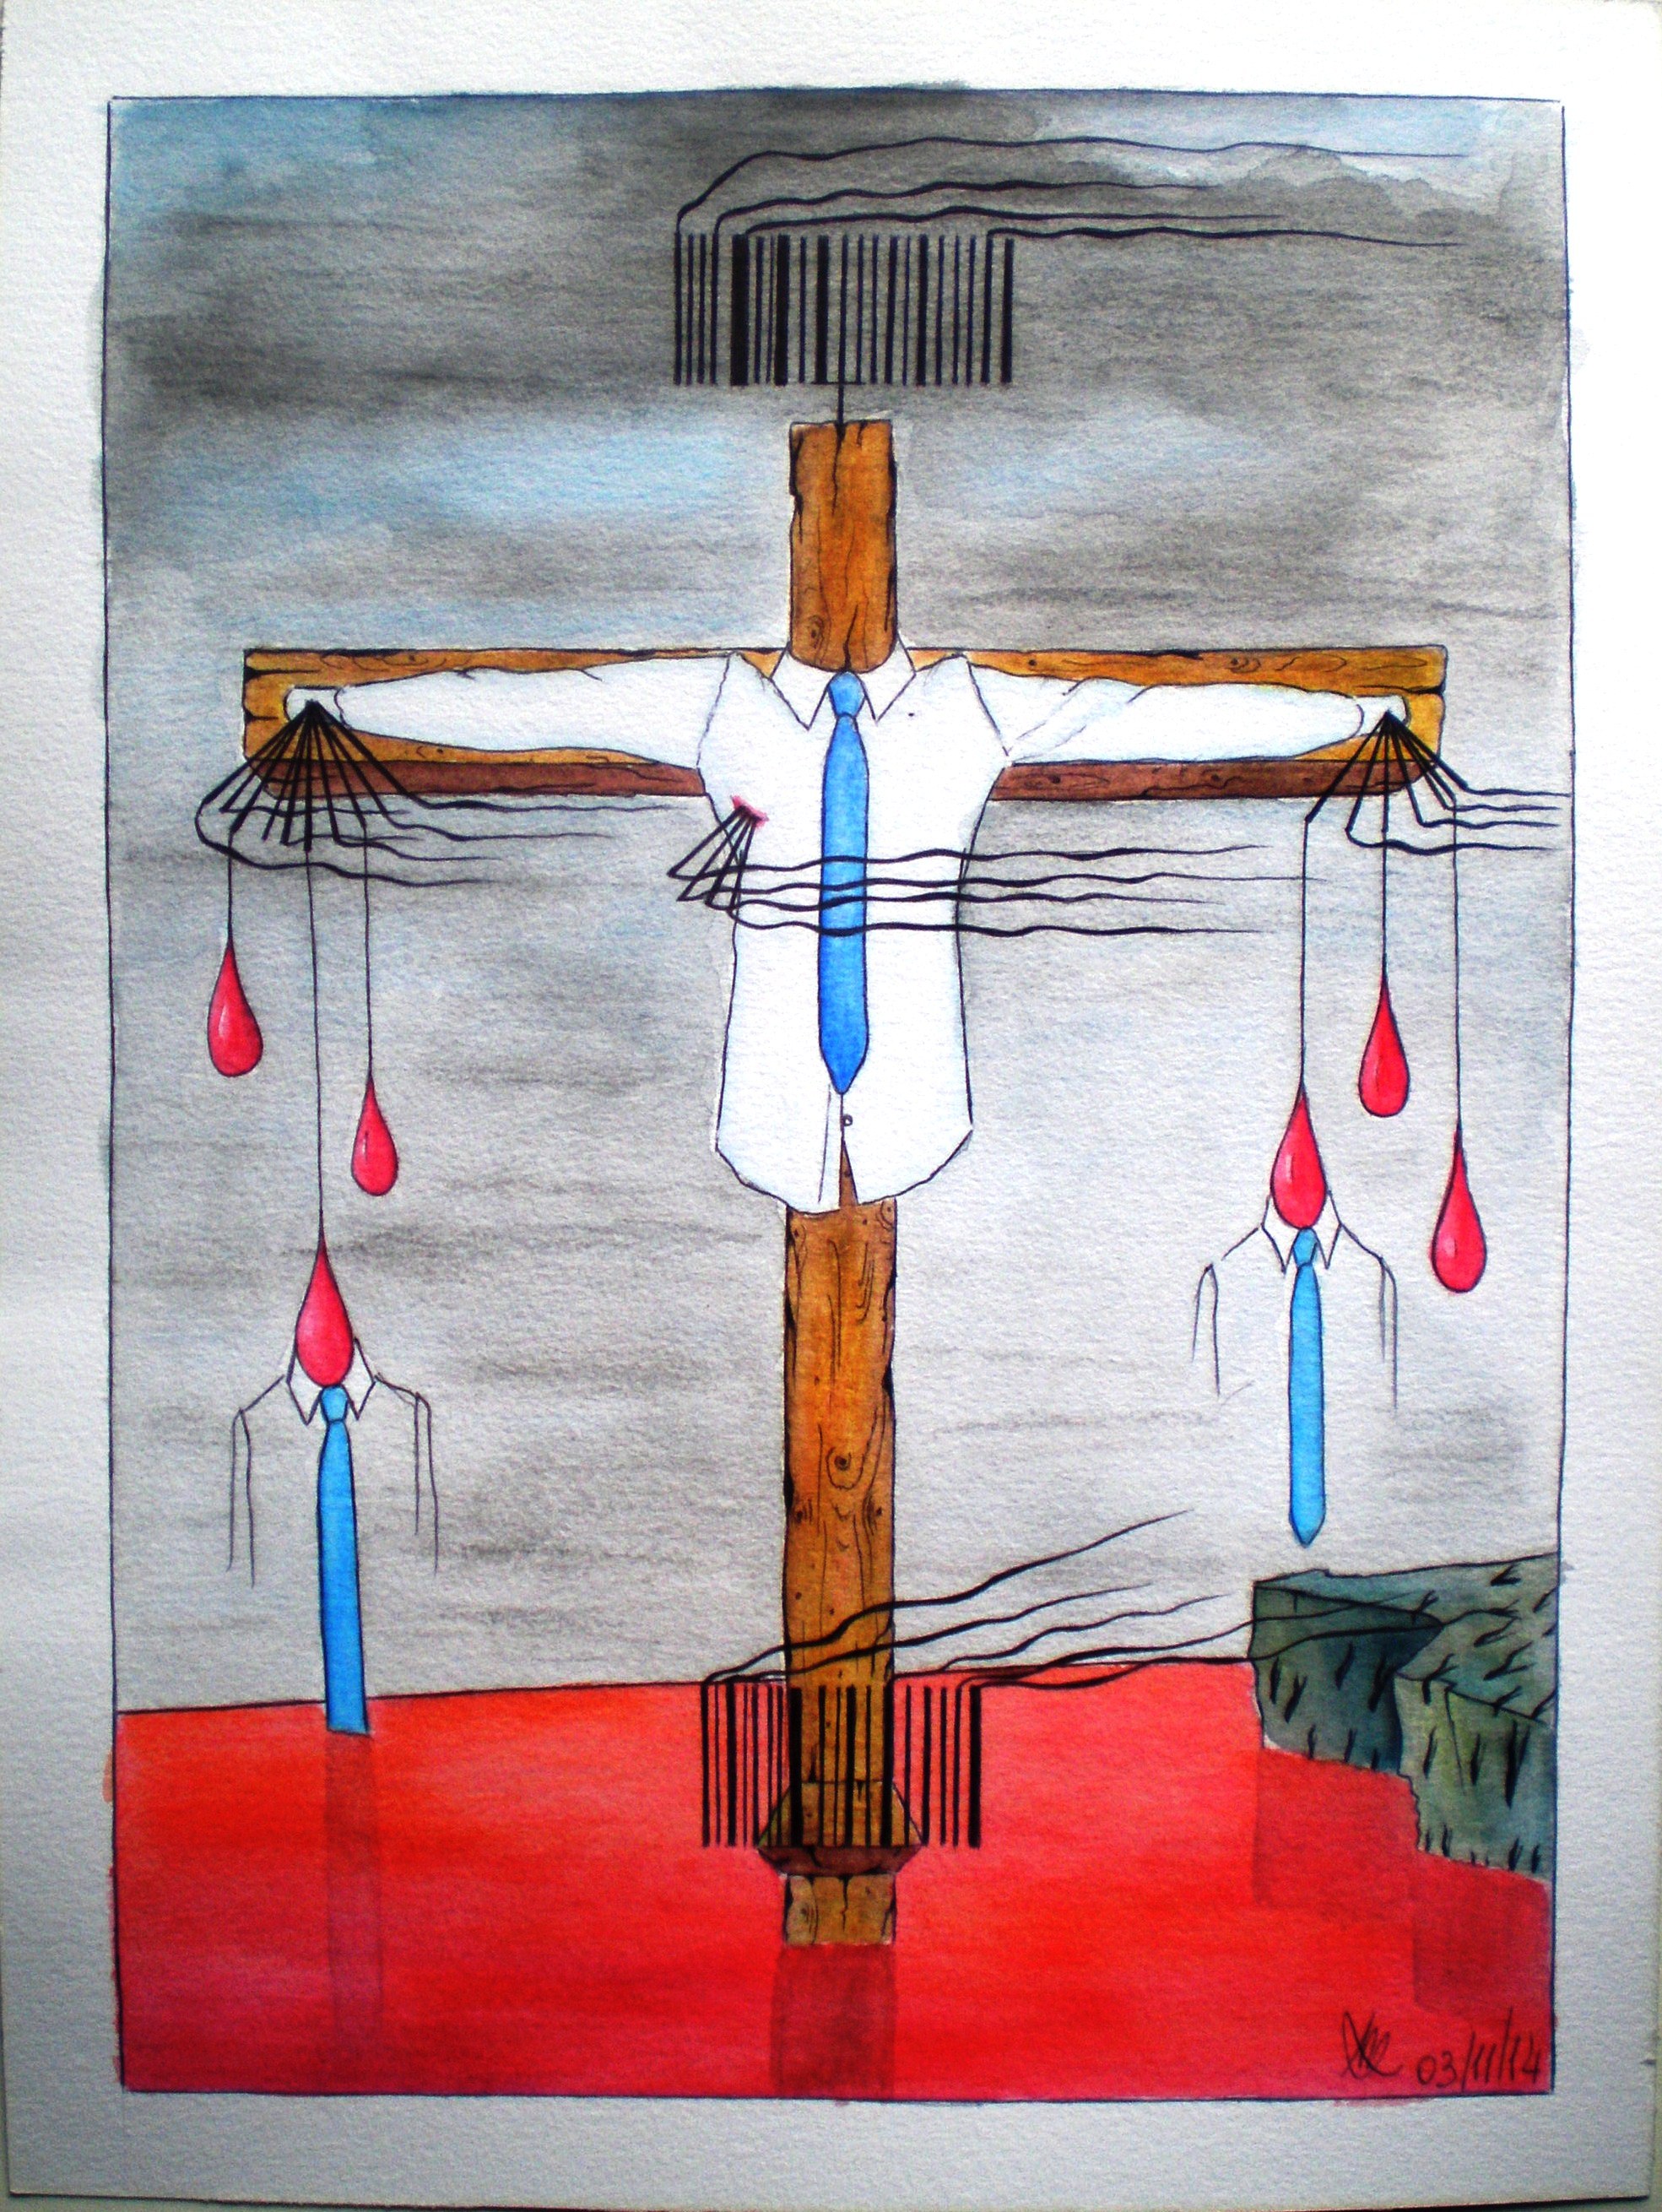 Crocifissione di colletti bianchi (crucifixion of white-collar), 2014 disegno a penna e acquerello (Pen drawing and watercolor), cm 30x40, Pasquale Mastrogiacomo, Acerno (SA).